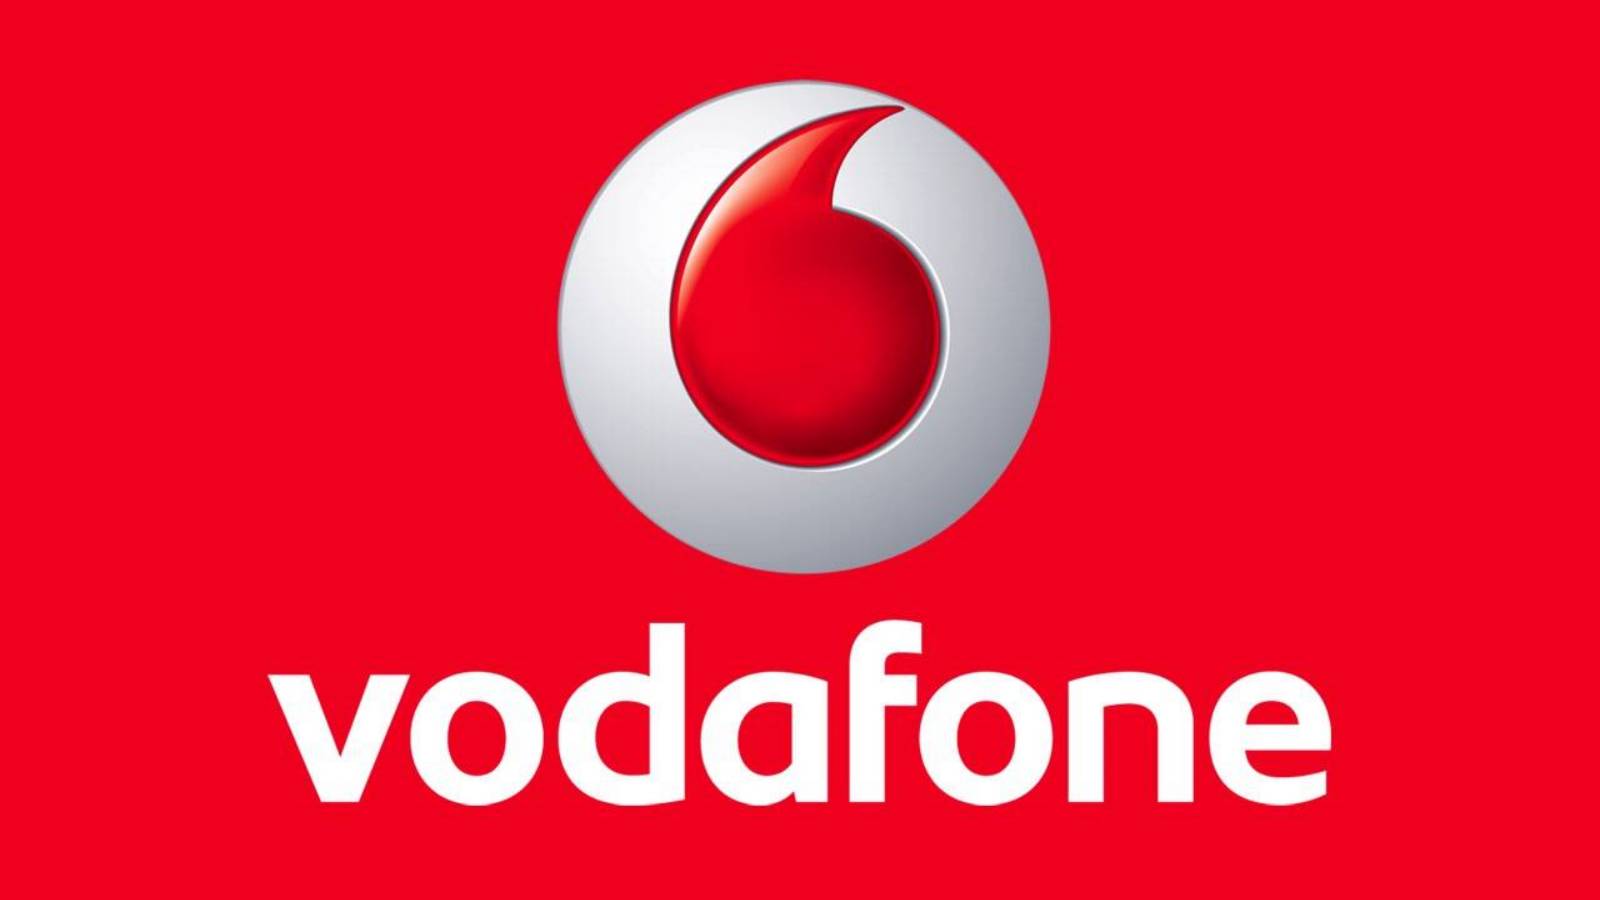 Vodafone Offizielle KOSTENLOSE MILLIONEN rumänischer Kunden